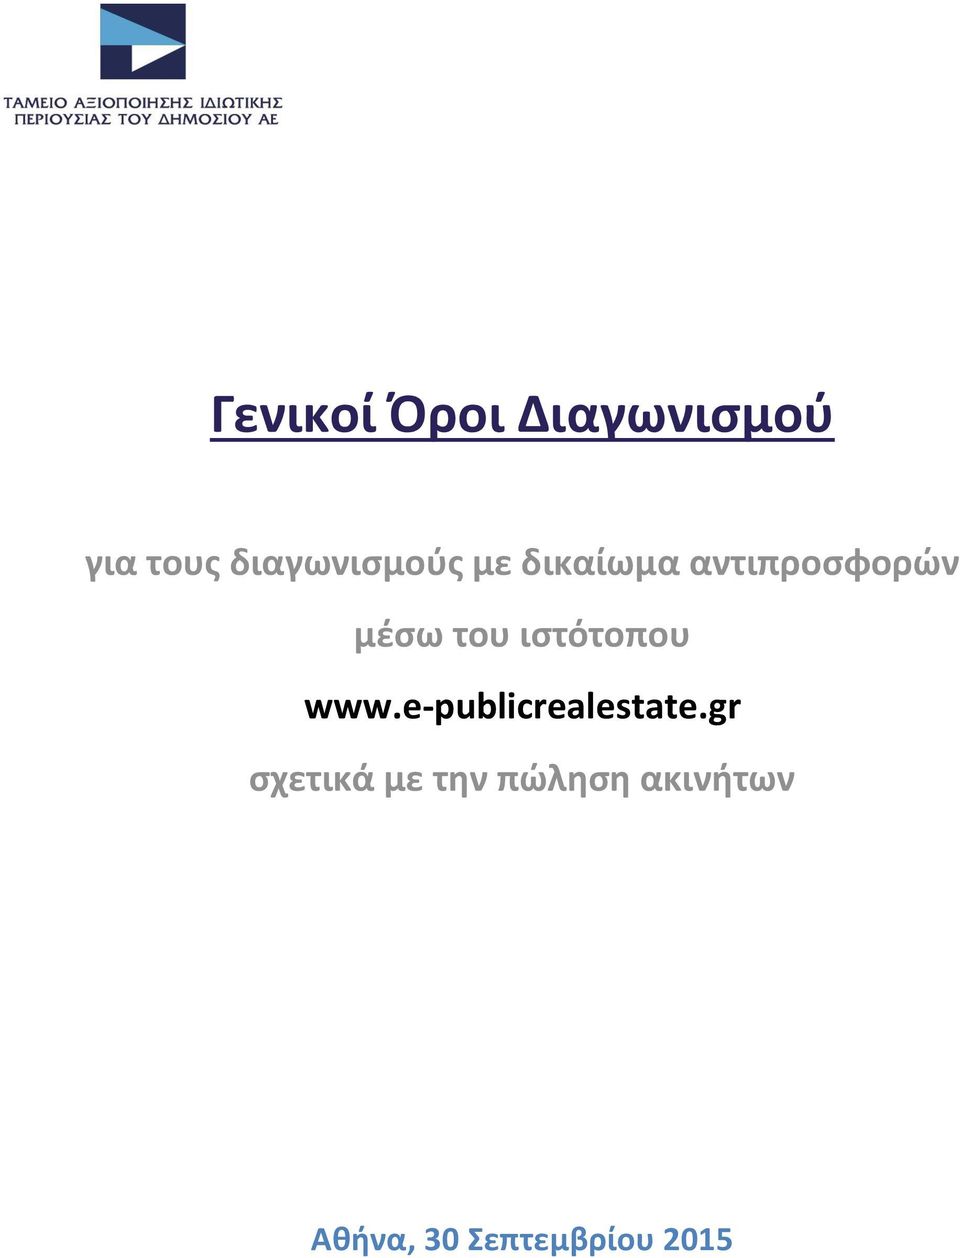 του ιστότοπου www.e-publicrealestate.